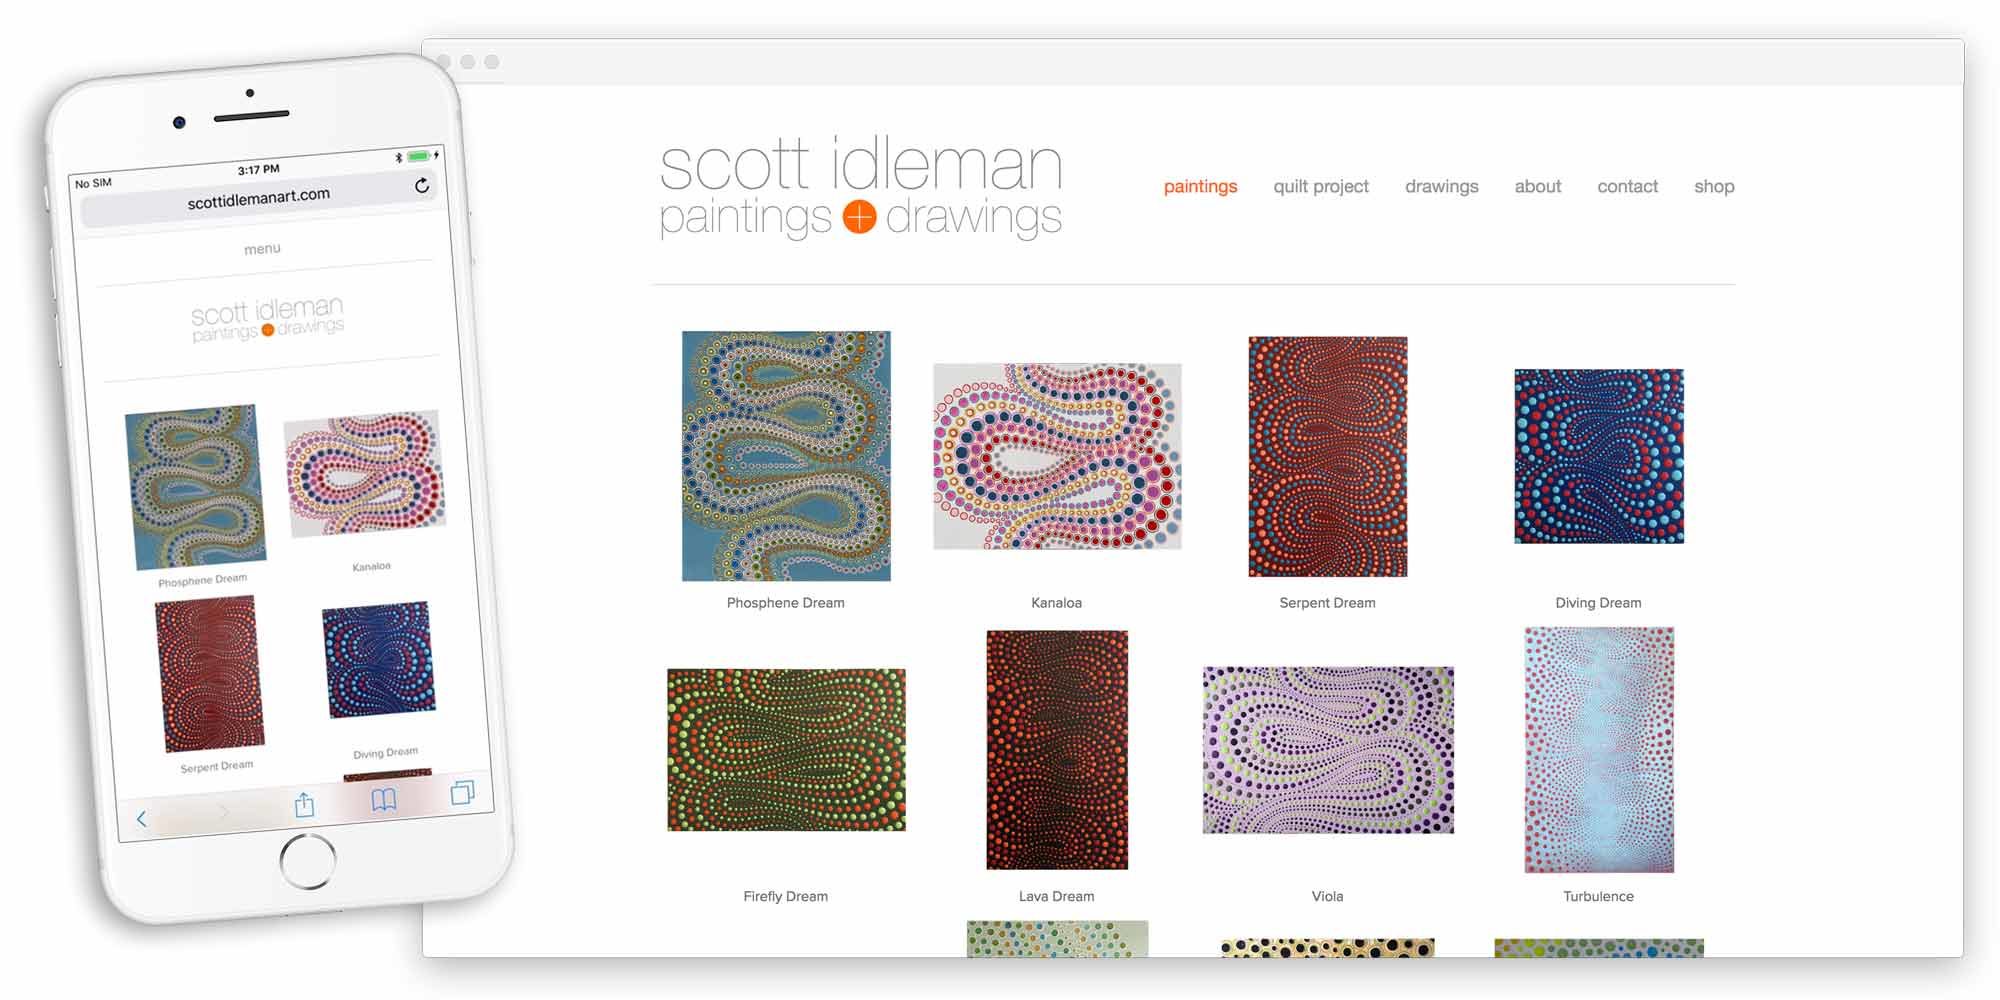 scott idleman art website by lobstervine